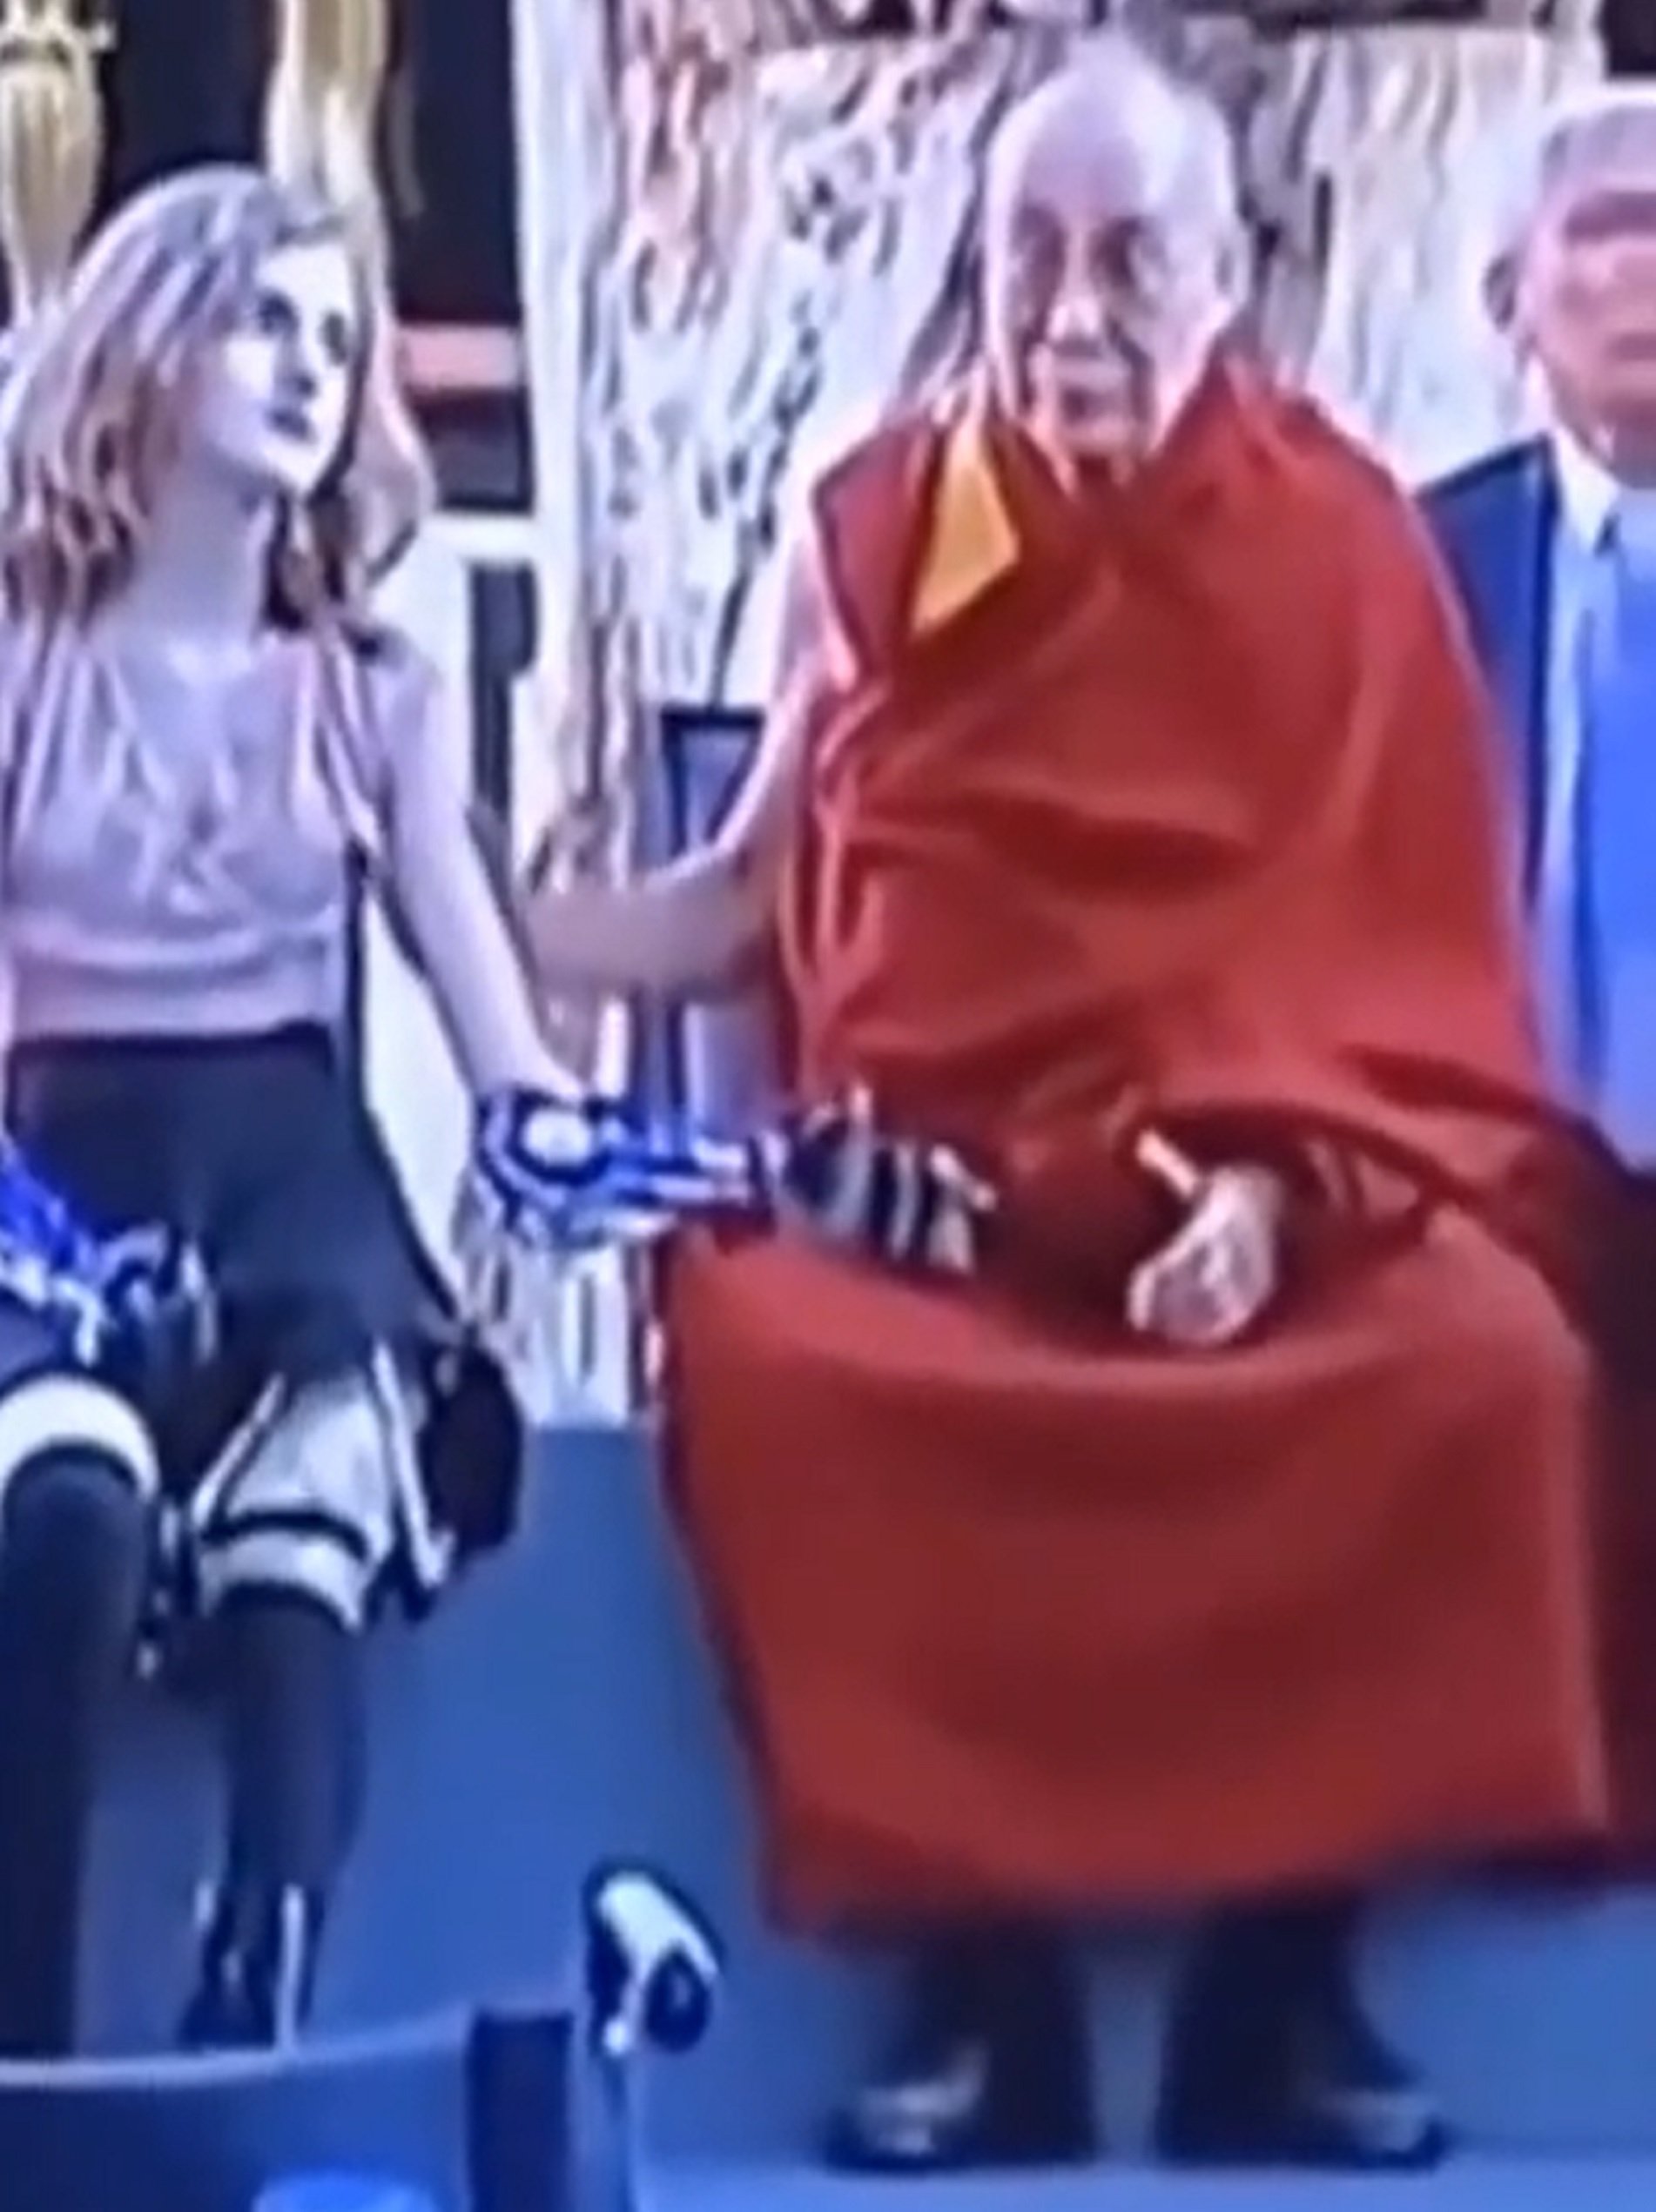 Surt a la llum un segon vídeo polèmic del Dalai-lama acariciant una nena de manera inapropiada